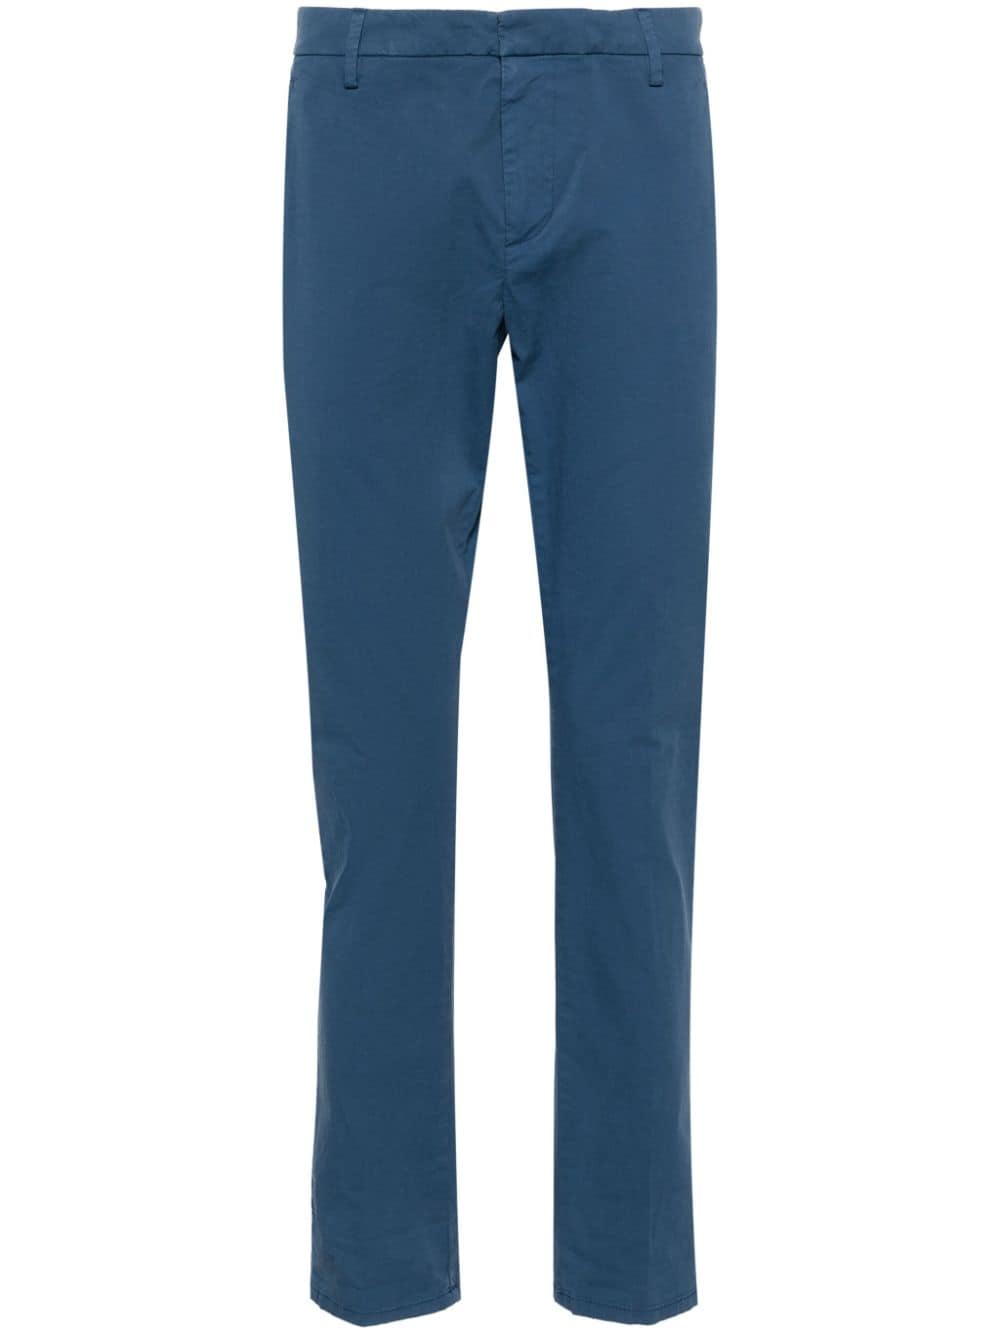 Pantalone Gaubert blu chiaro